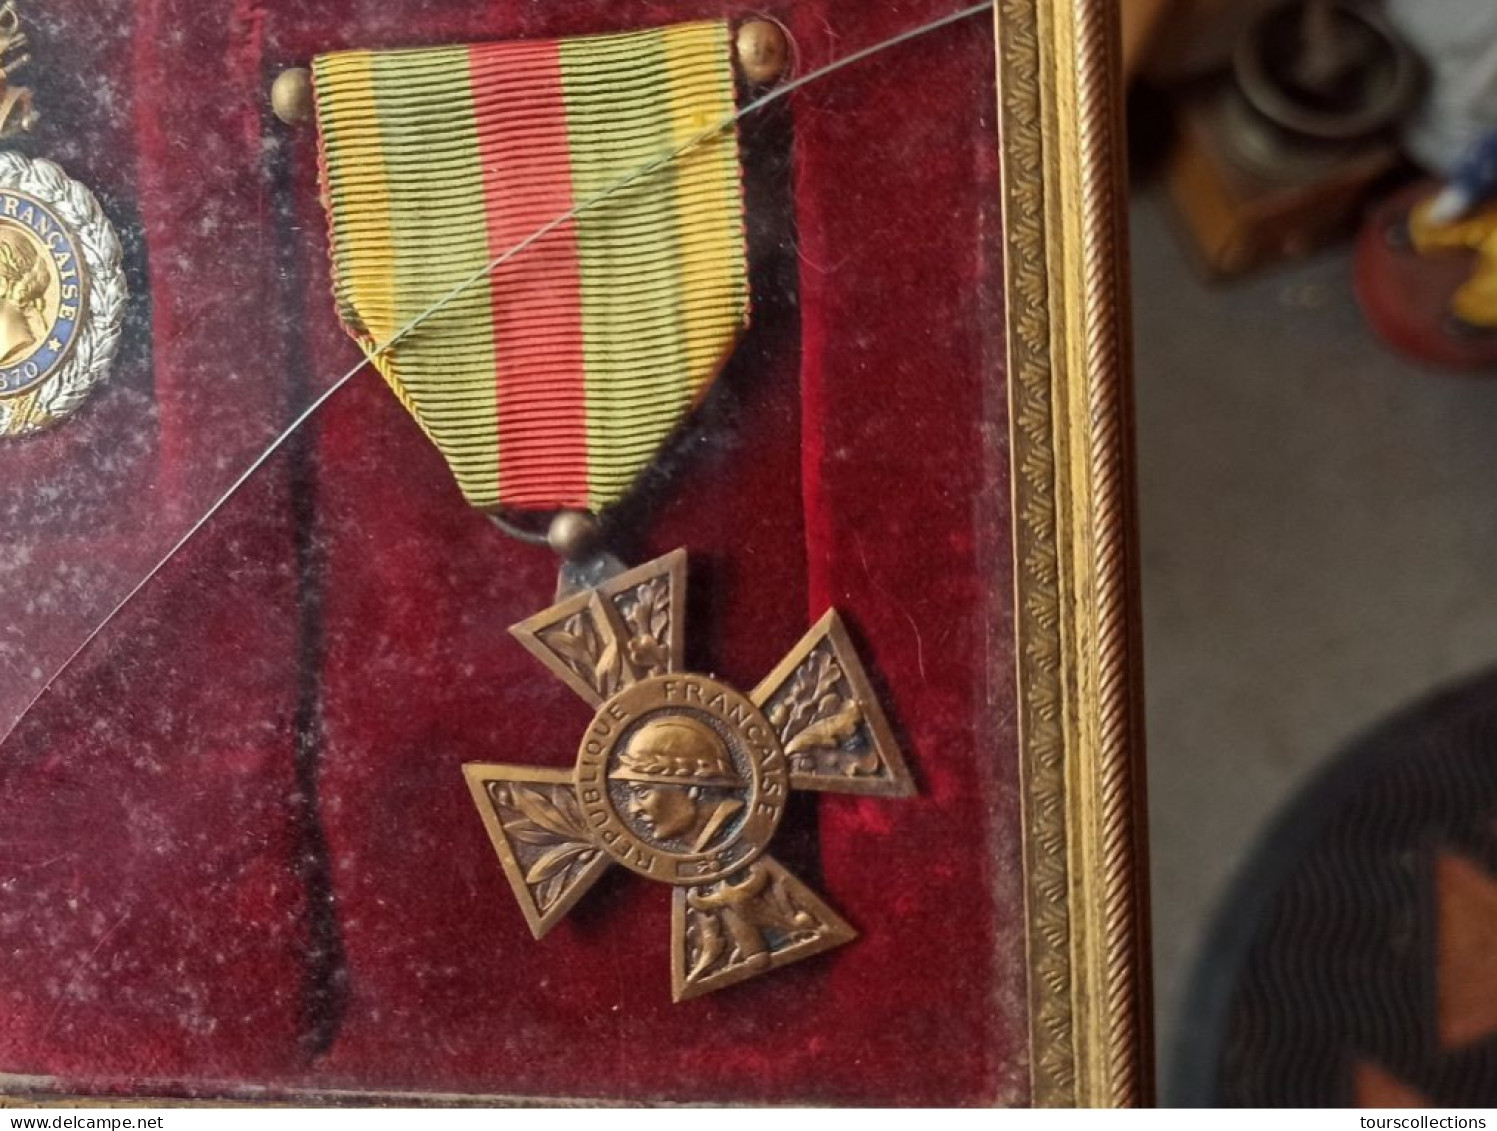 Lot cadre et MEDAILLE MILITAIRE DECORATION  WW1 engagé volontaire blessé et croix de guerre et WW2 chevalier Résistance